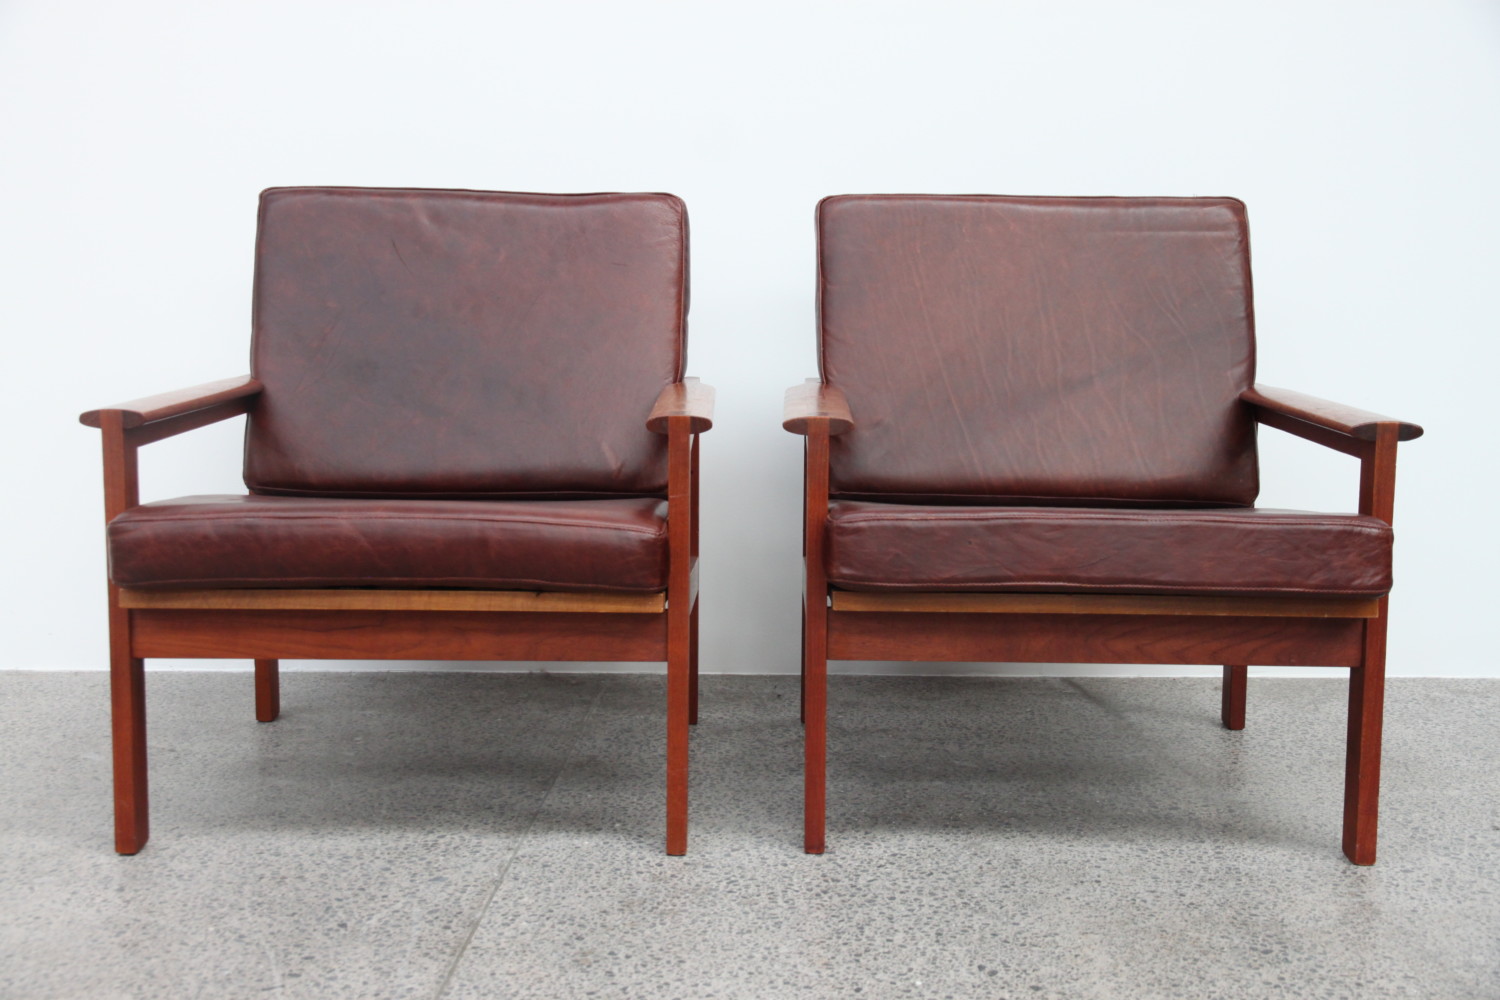 Illum Wikkelso Teak & Leather Armchairs